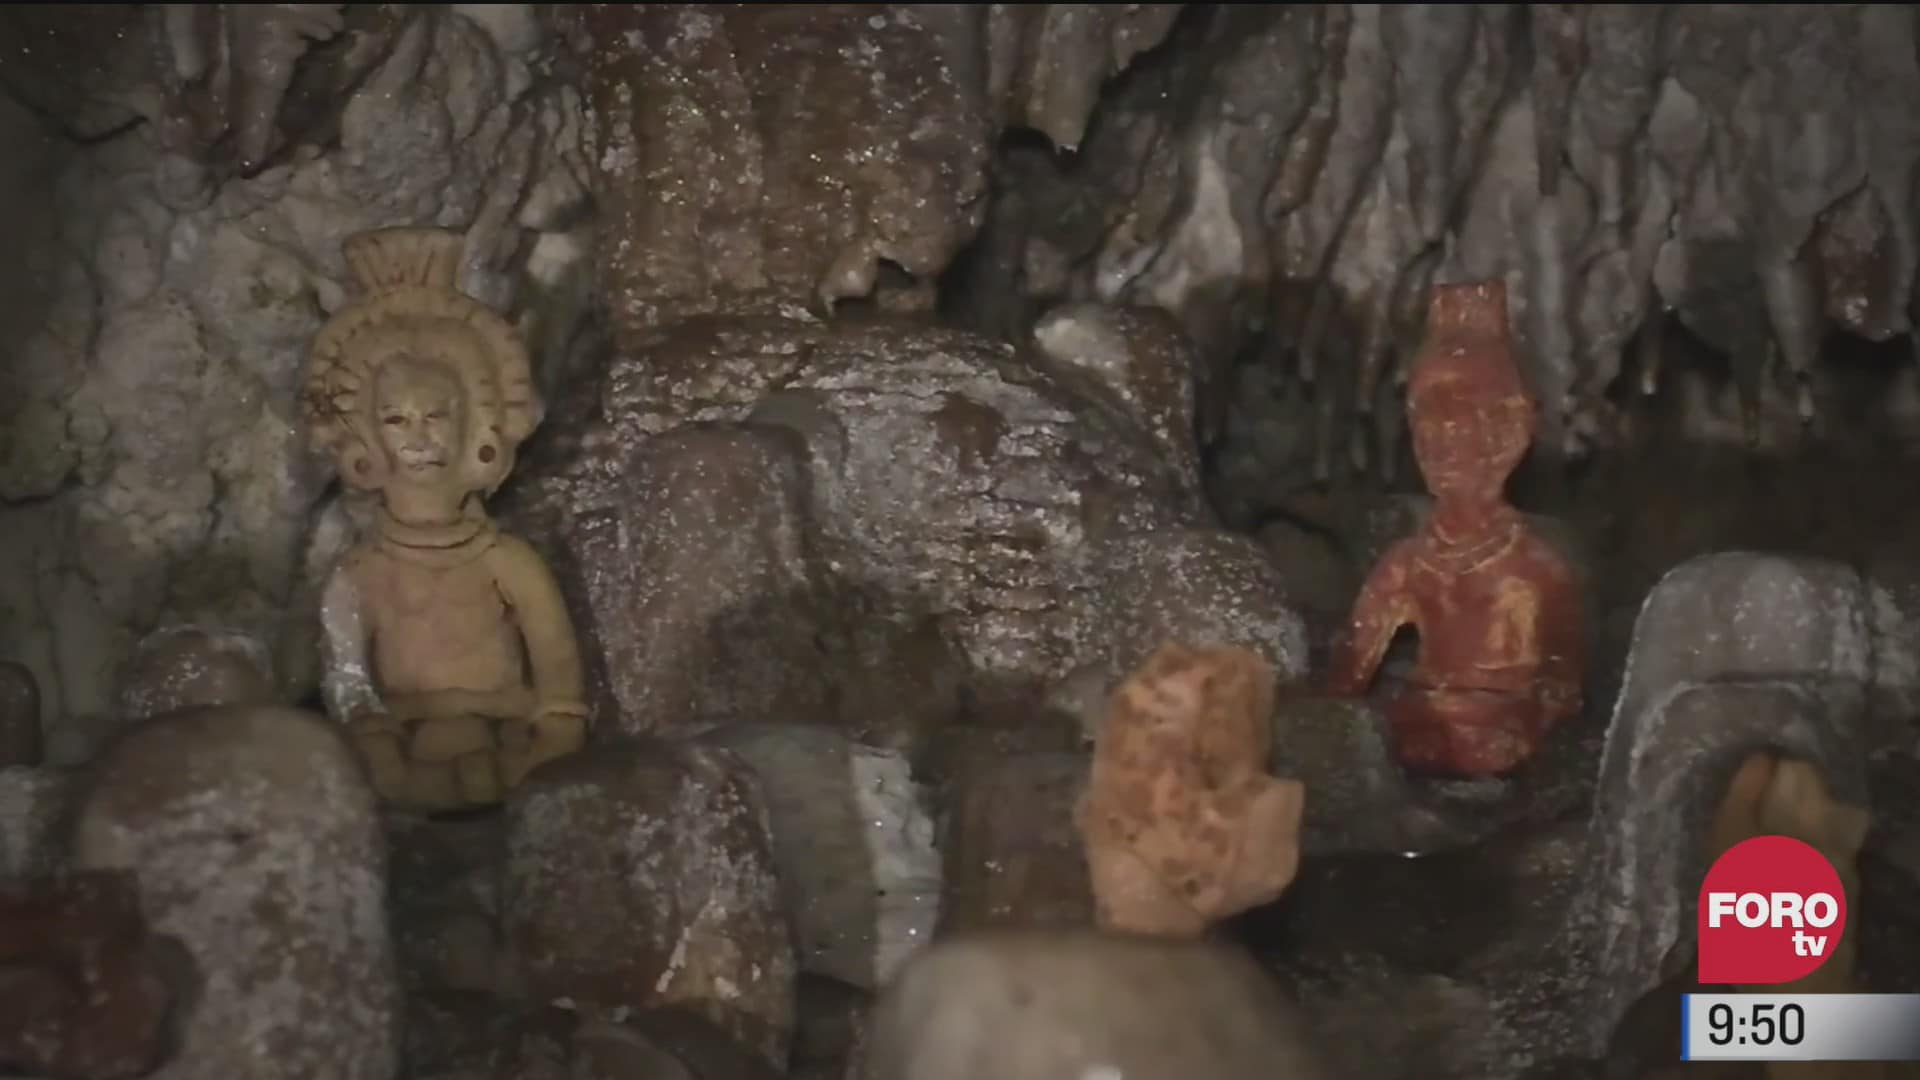 grutas y cavernas el tesoro subterraneo de yucatan